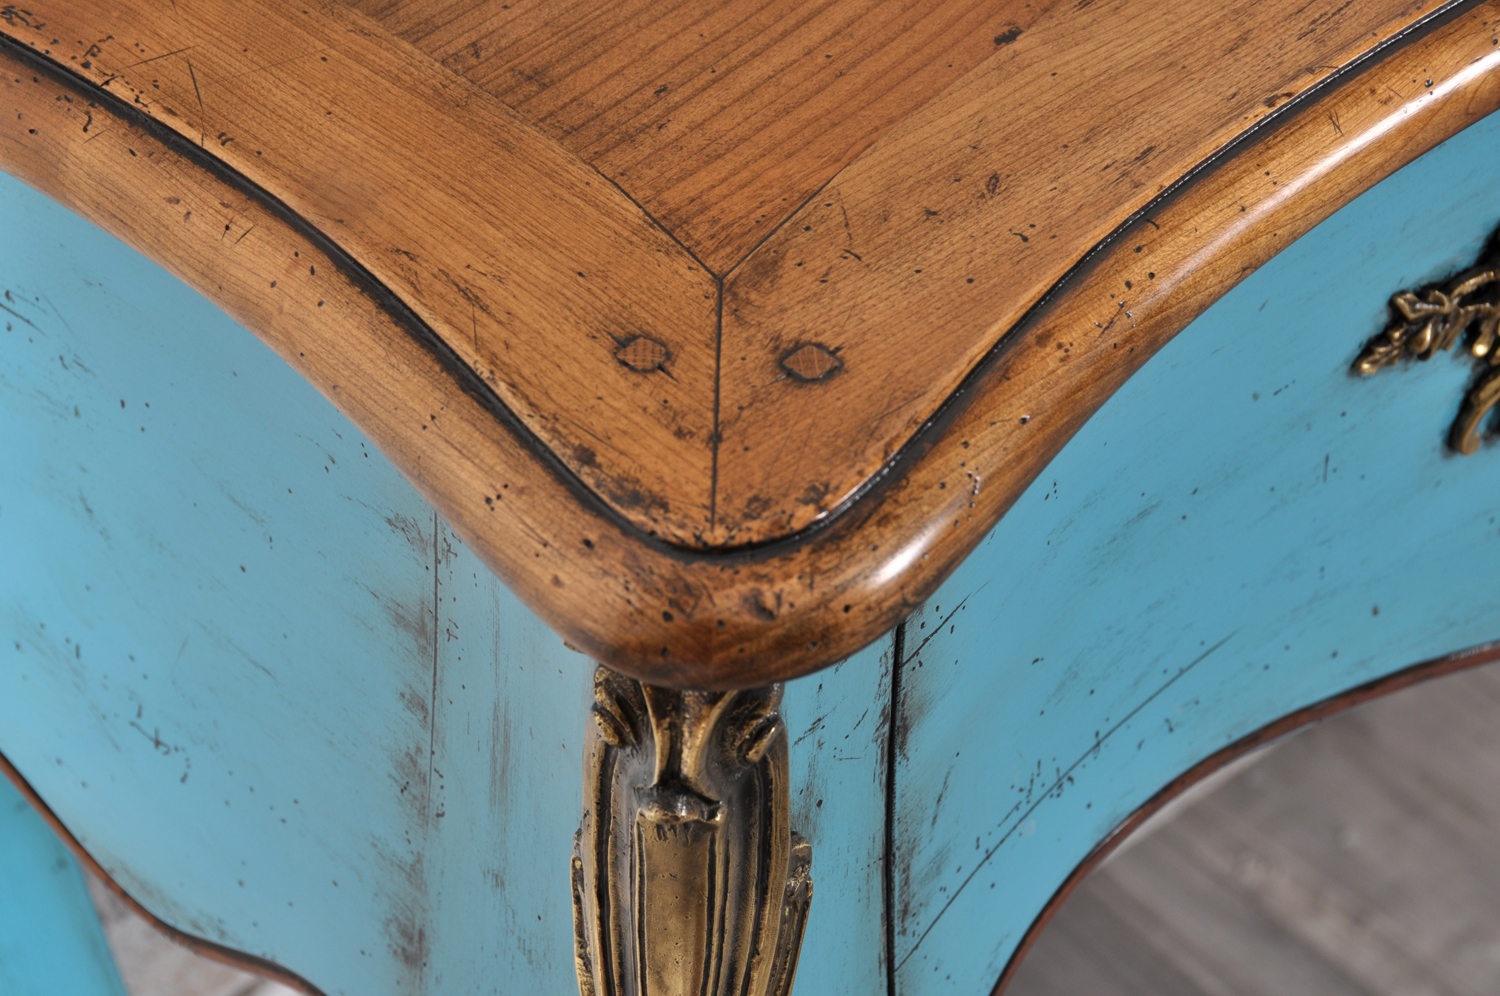 consolle di lusso francese bombata e mossa laccata bicolore arredo del 700 realizzata come il manufatto originale accessori in bronzo cesellati a mano nello stile classico Luigi XV barocco